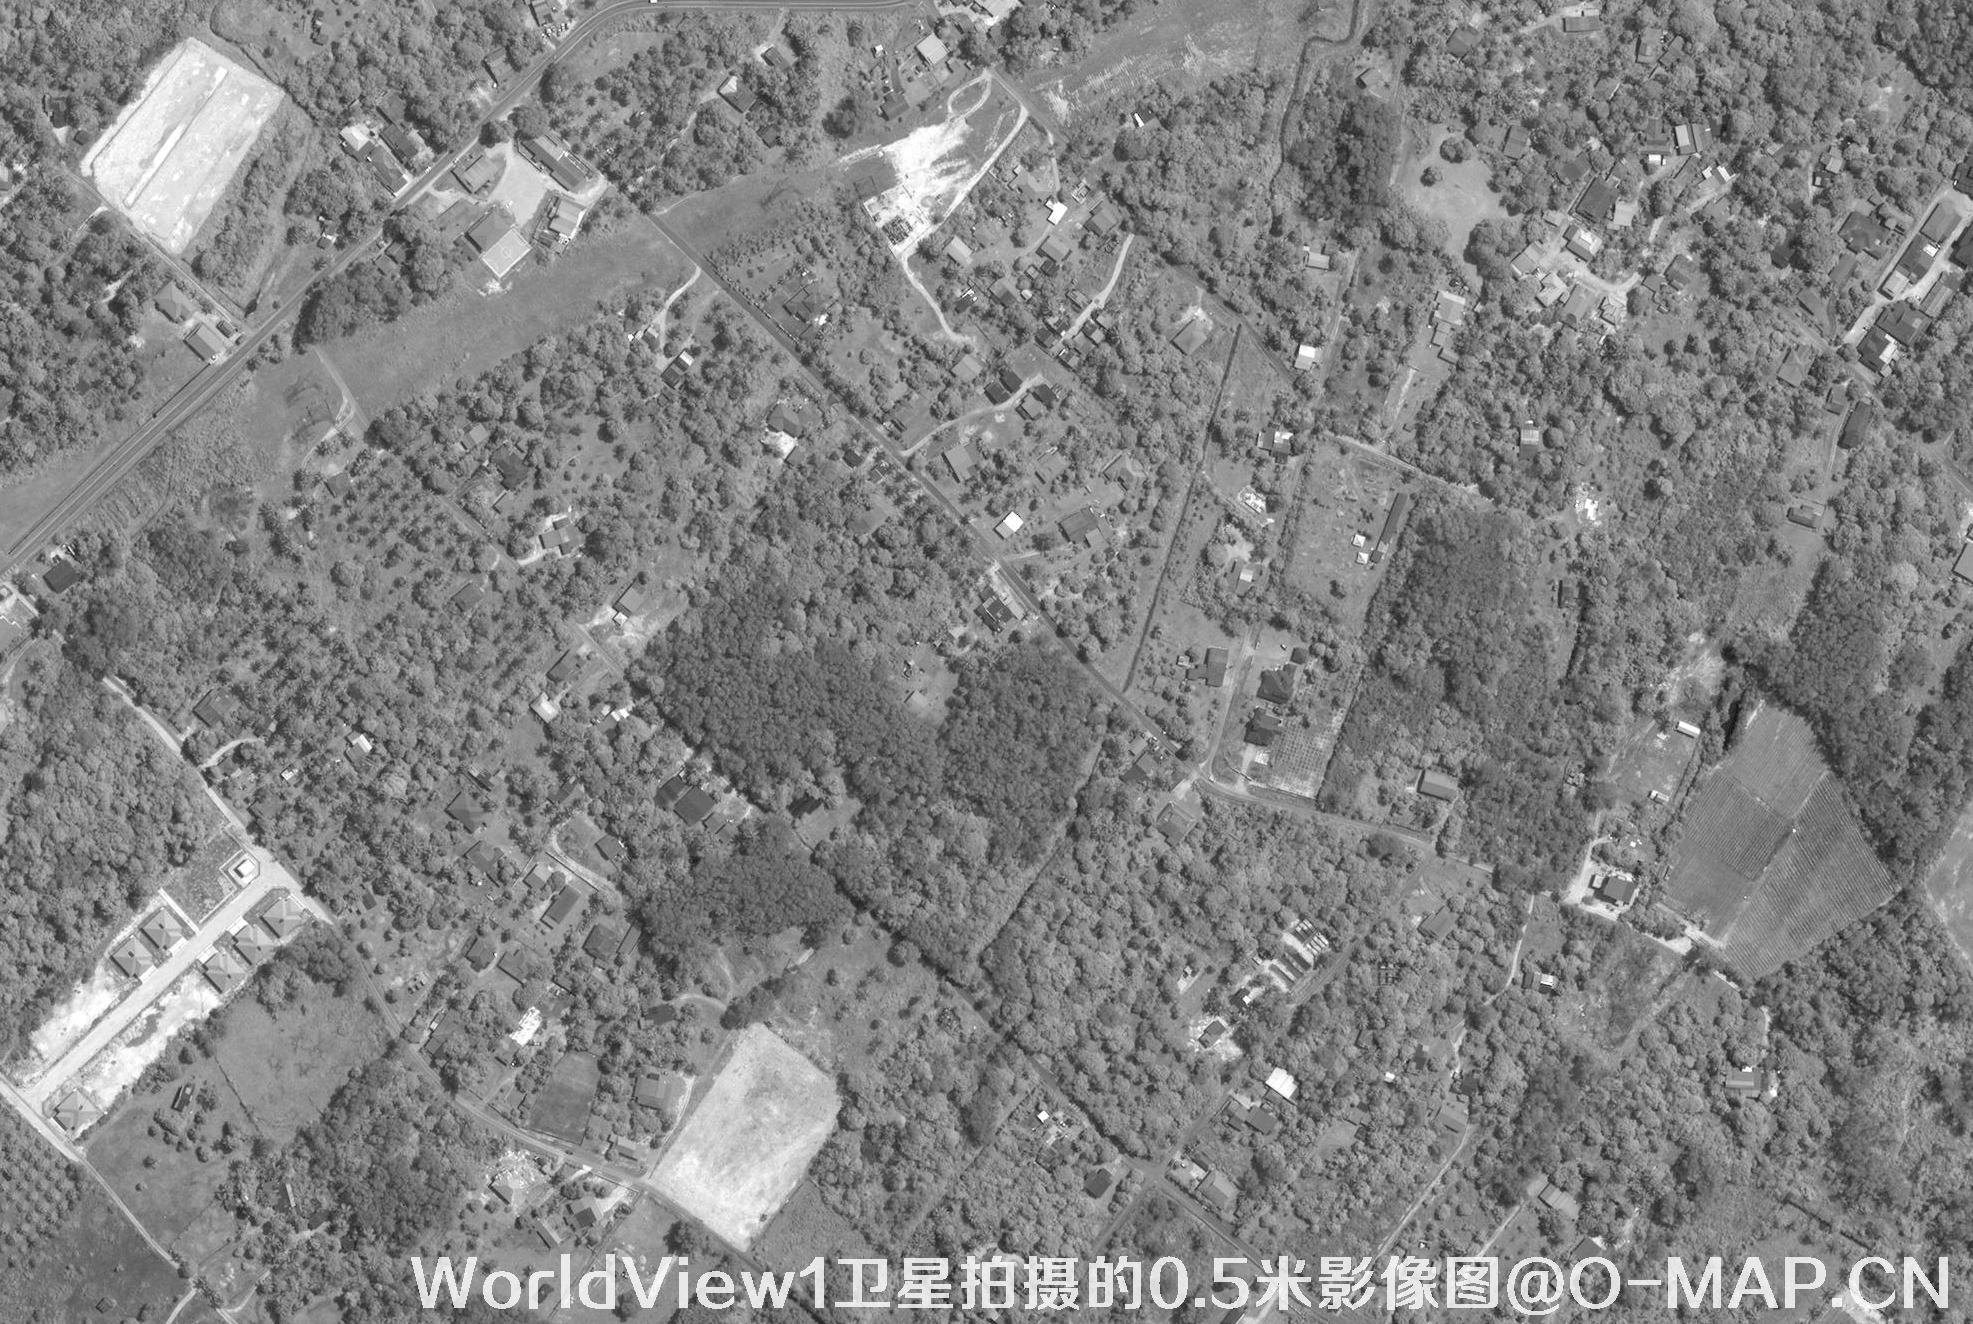 0.5米WV1卫星拍摄的高清图片